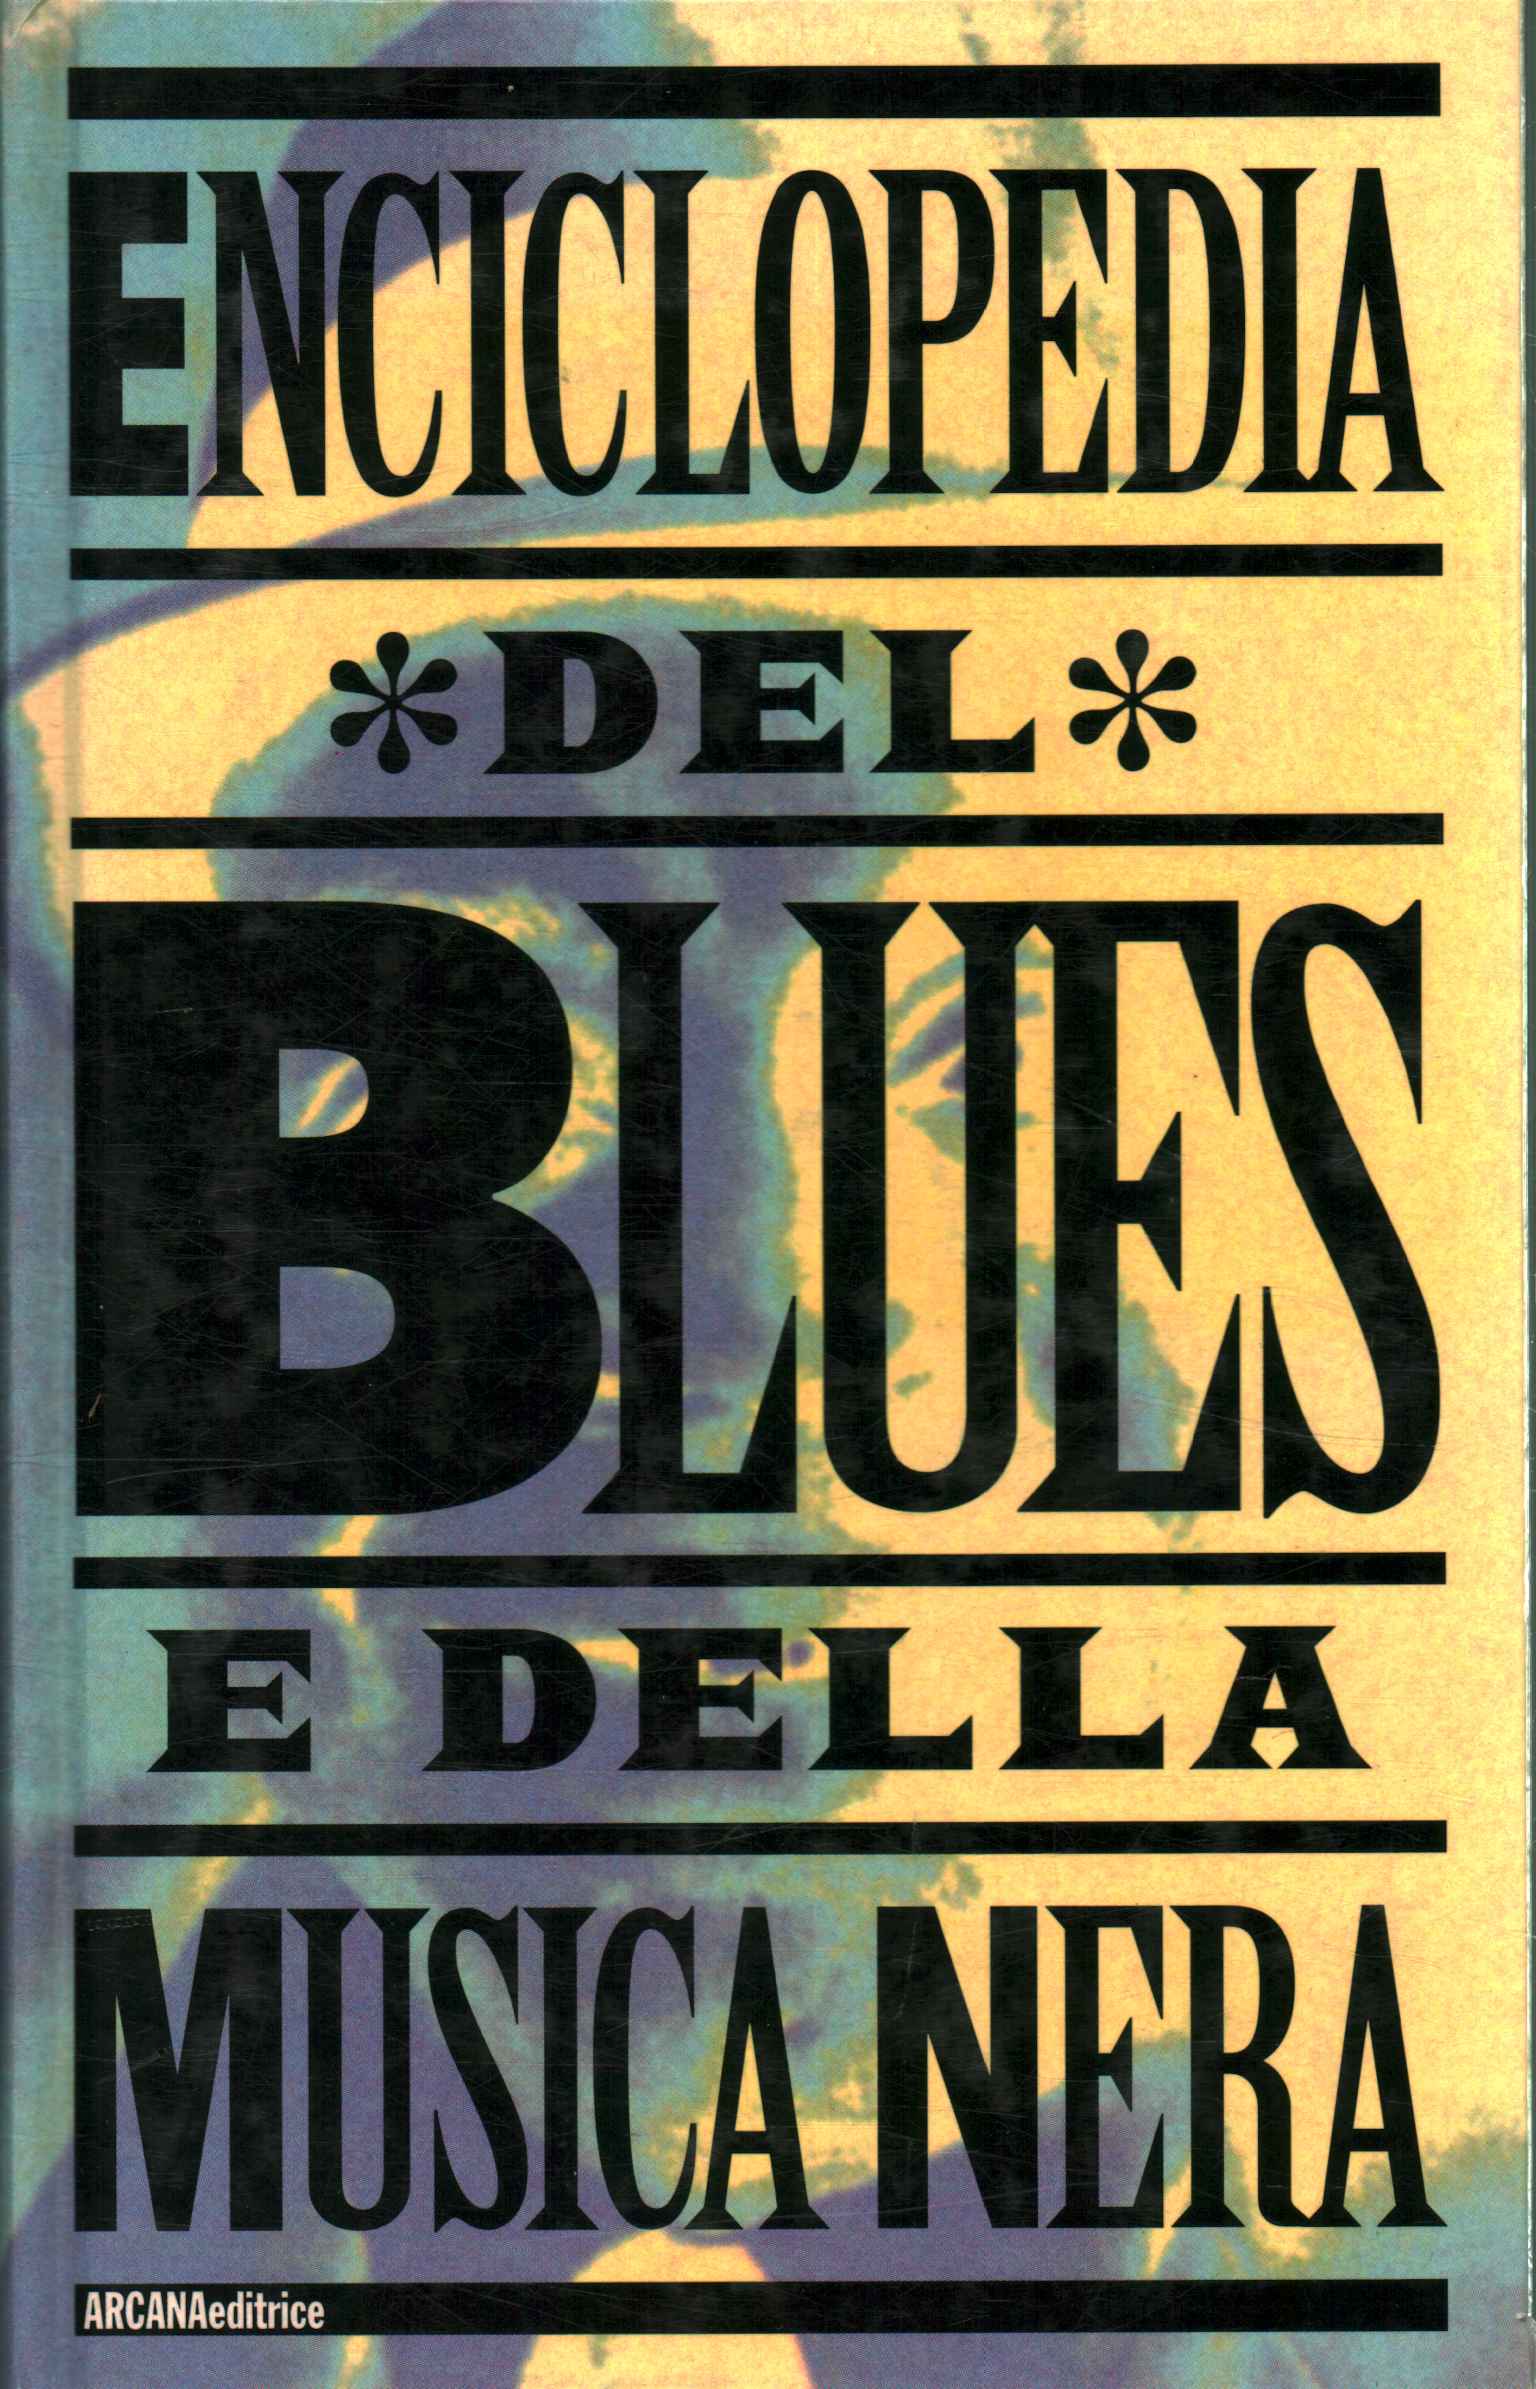 Enciclopedia de blues y música.